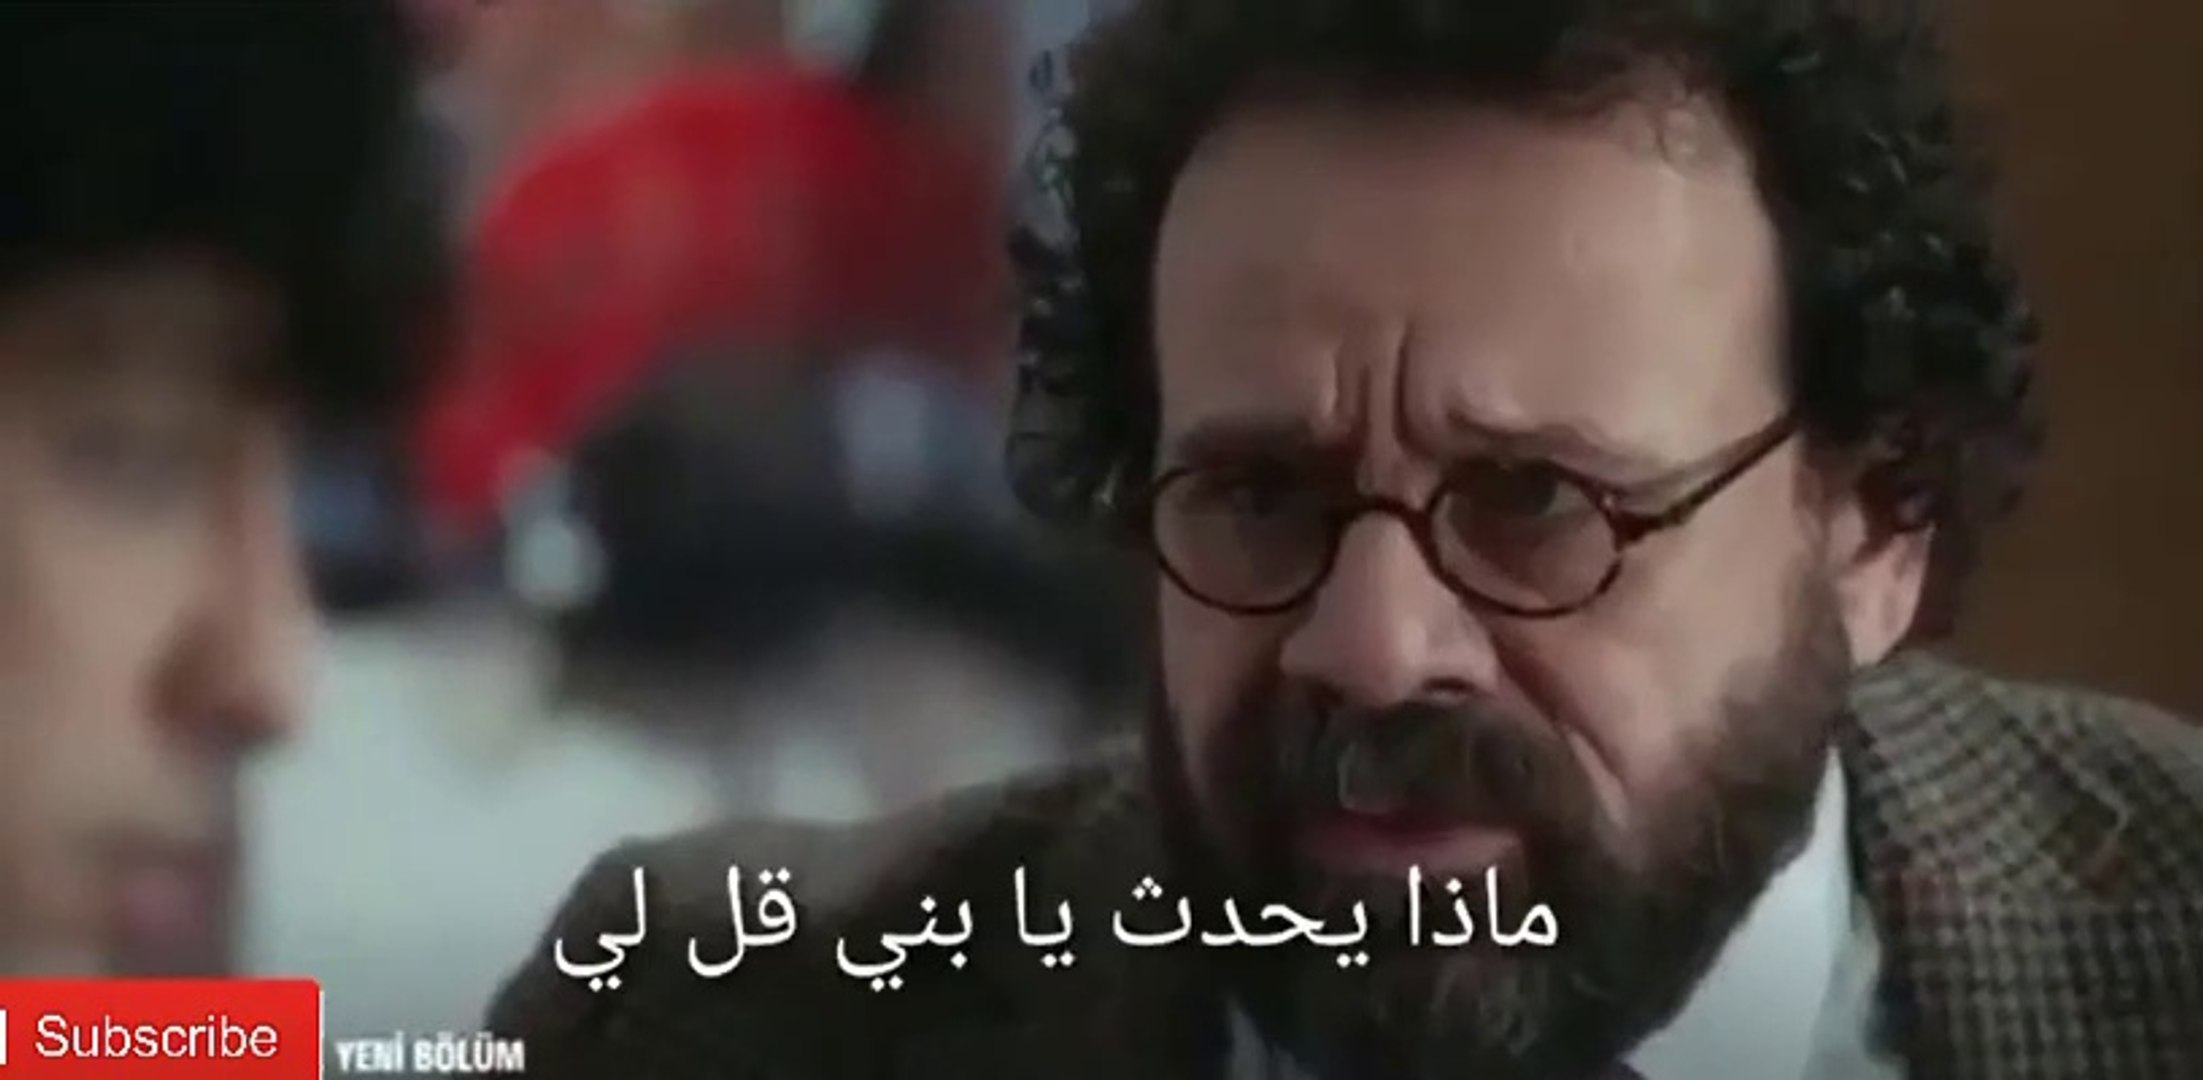 مسلسل الطبيب المعجزة الحلقة 17 اعلان 2 مترجم للعربية Hd Video Dailymotion